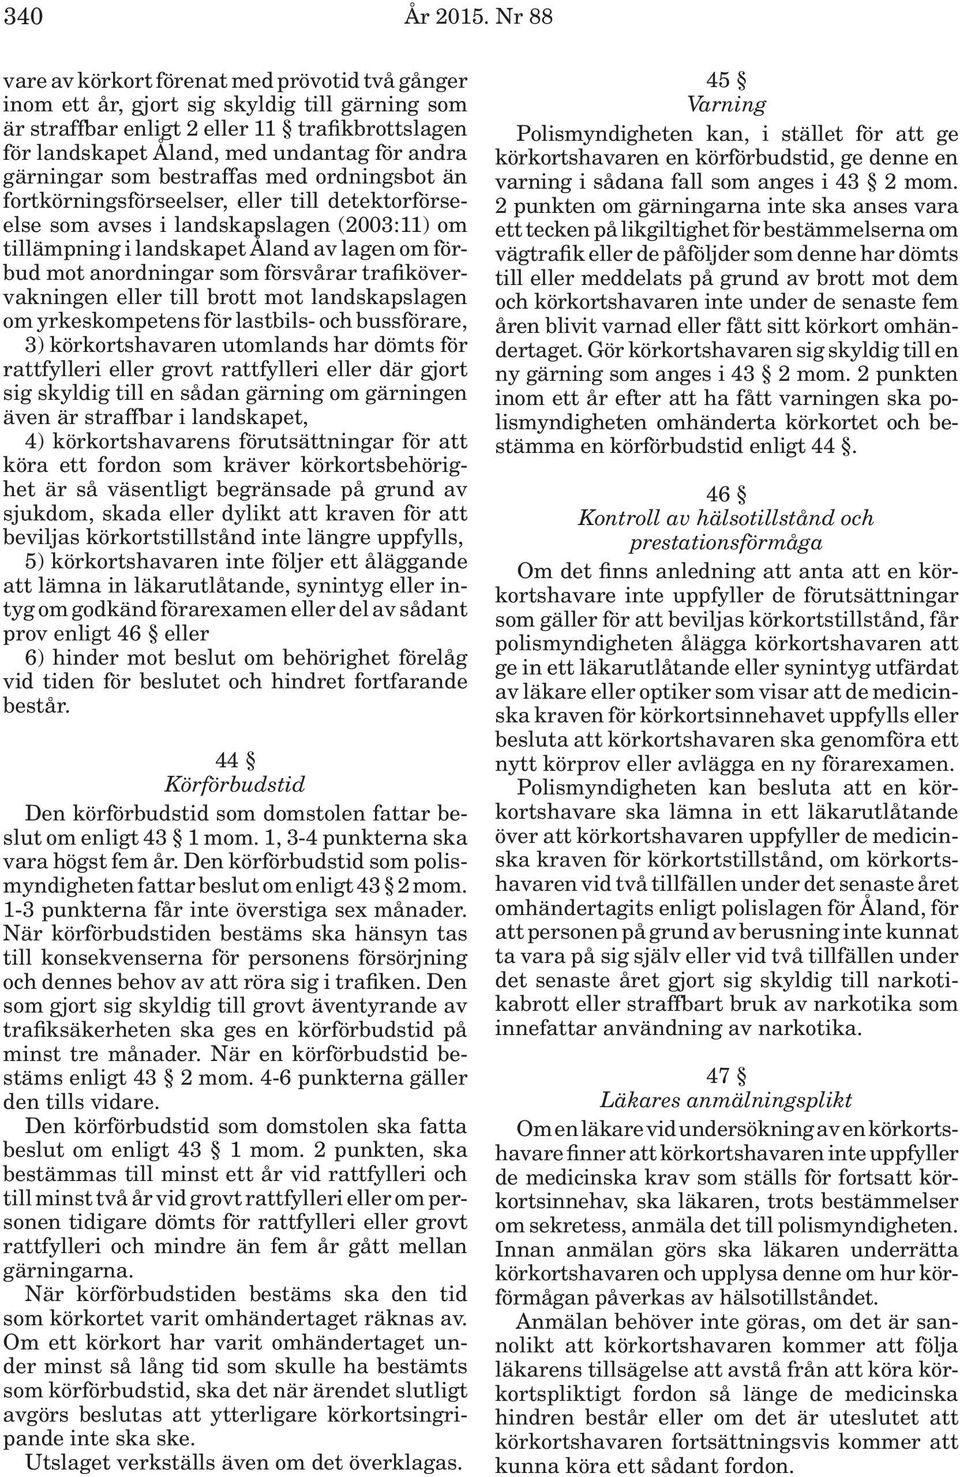 gärningar som bestraffas med ordningsbot än fortkörningsförseelser, eller till detektorförseelse som avses i landskapslagen (2003:11) om tillämpning i landskapet Åland av lagen om förbud mot